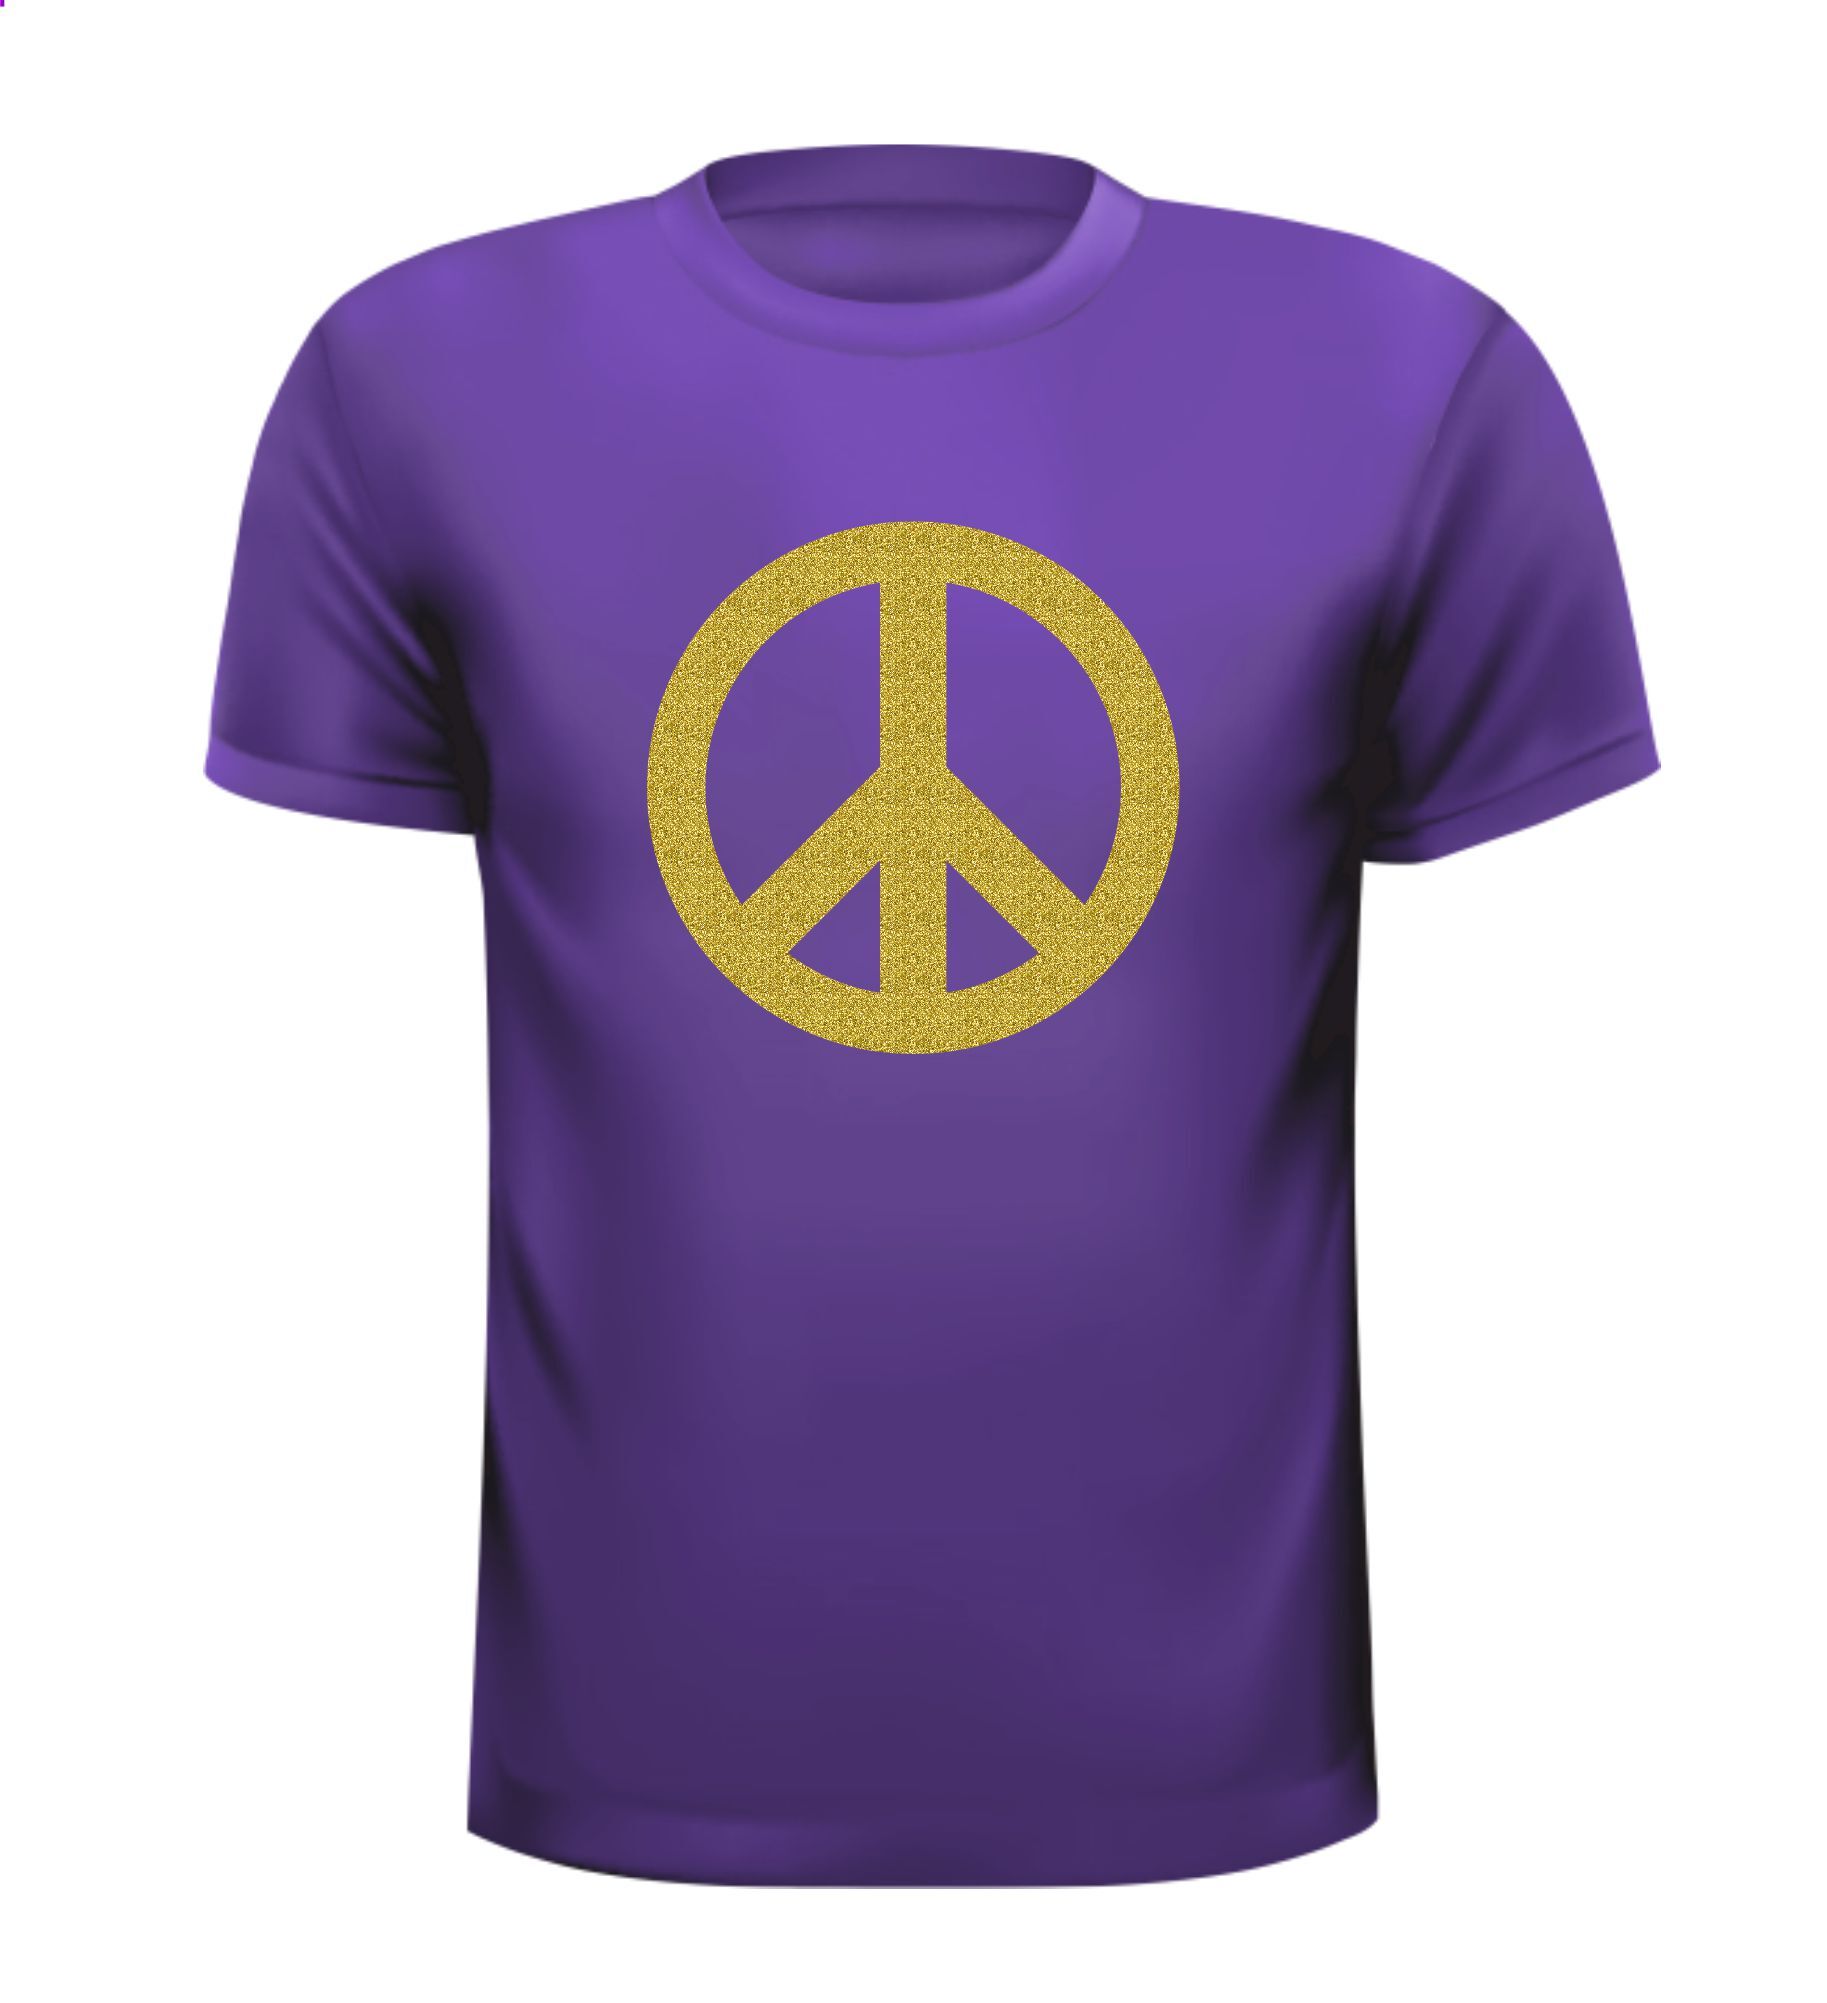 T-shirt vrede peace teken seventies gouden glitter opdruk lekker fout seventies shirt